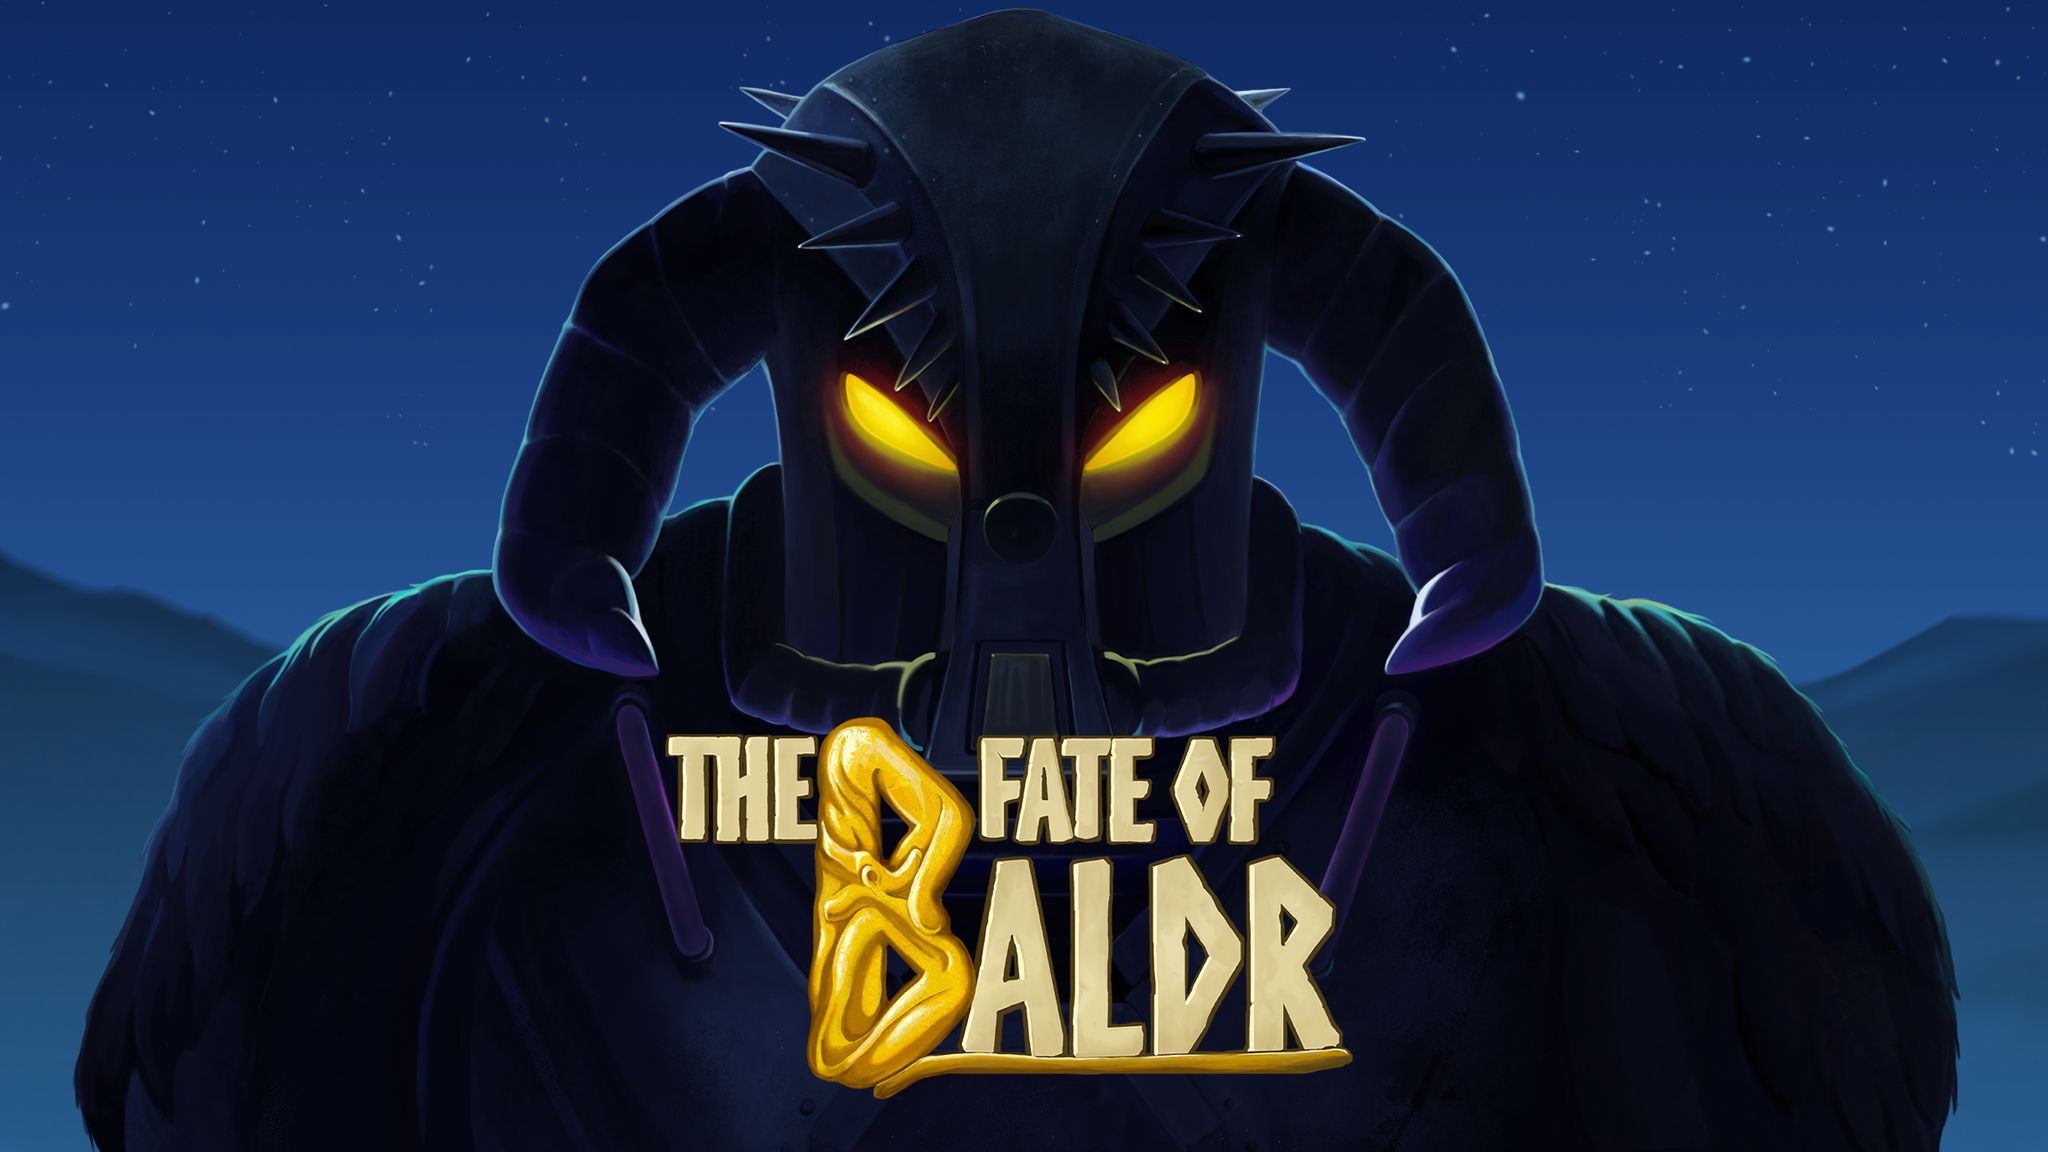 The Fate of Baldr è disponibile su Steam